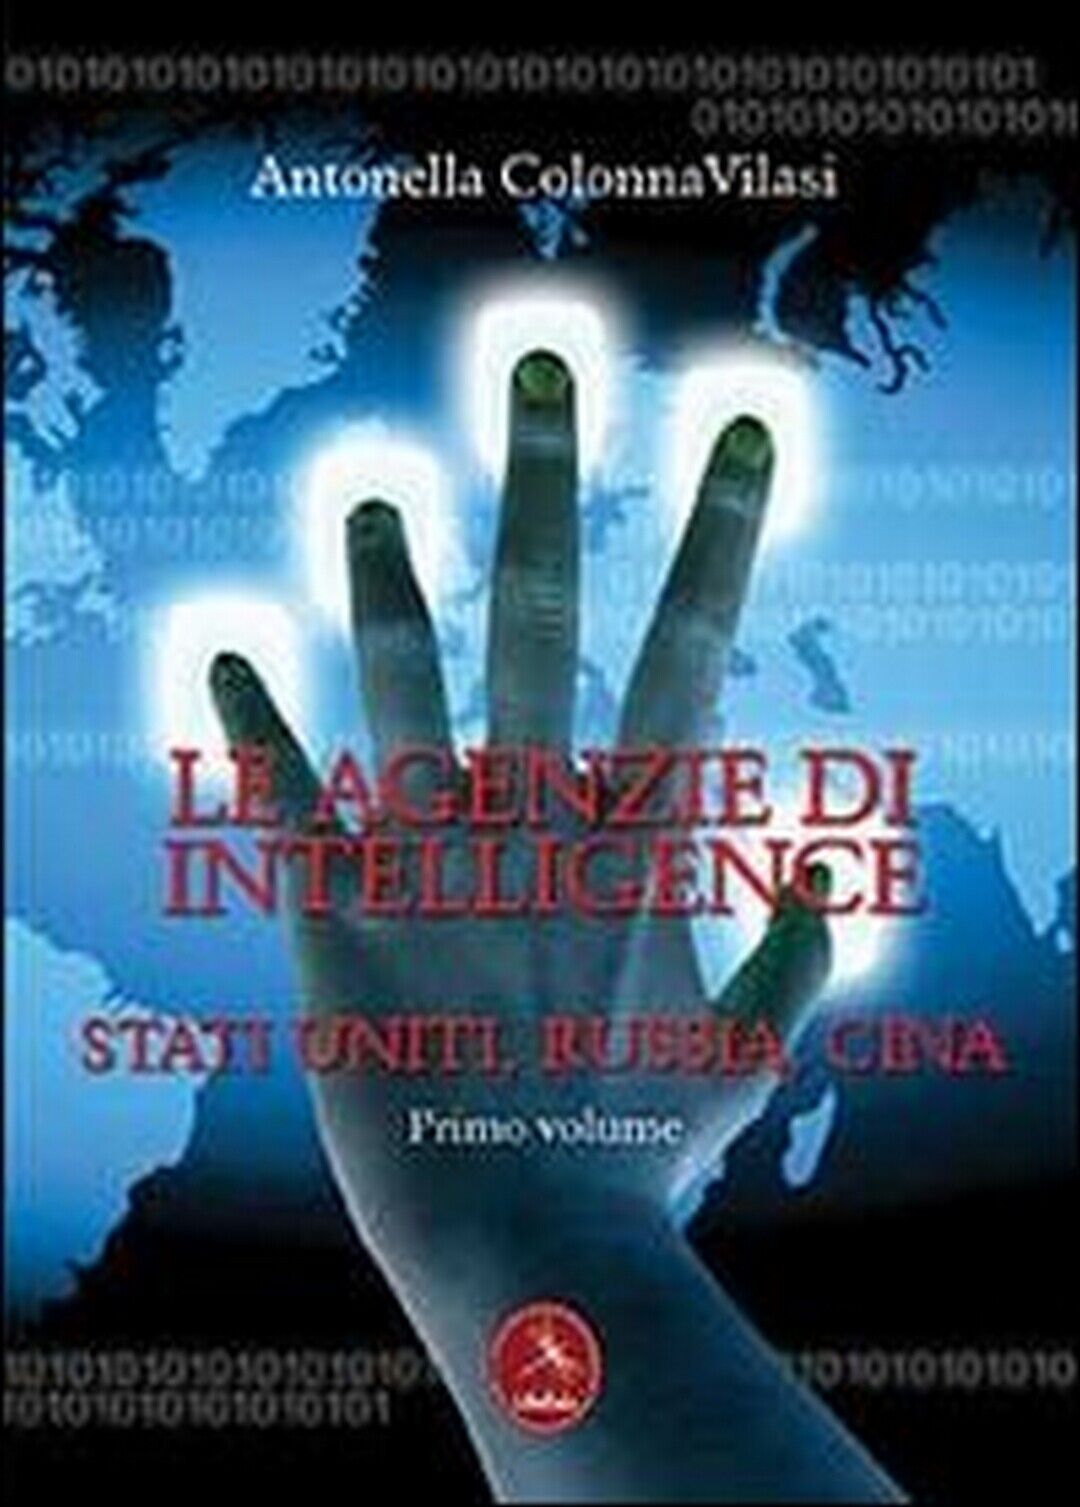 Le agenzie di intelligence Vol.1  di Antonella Colonna Vilasi,  2013,  Libellula